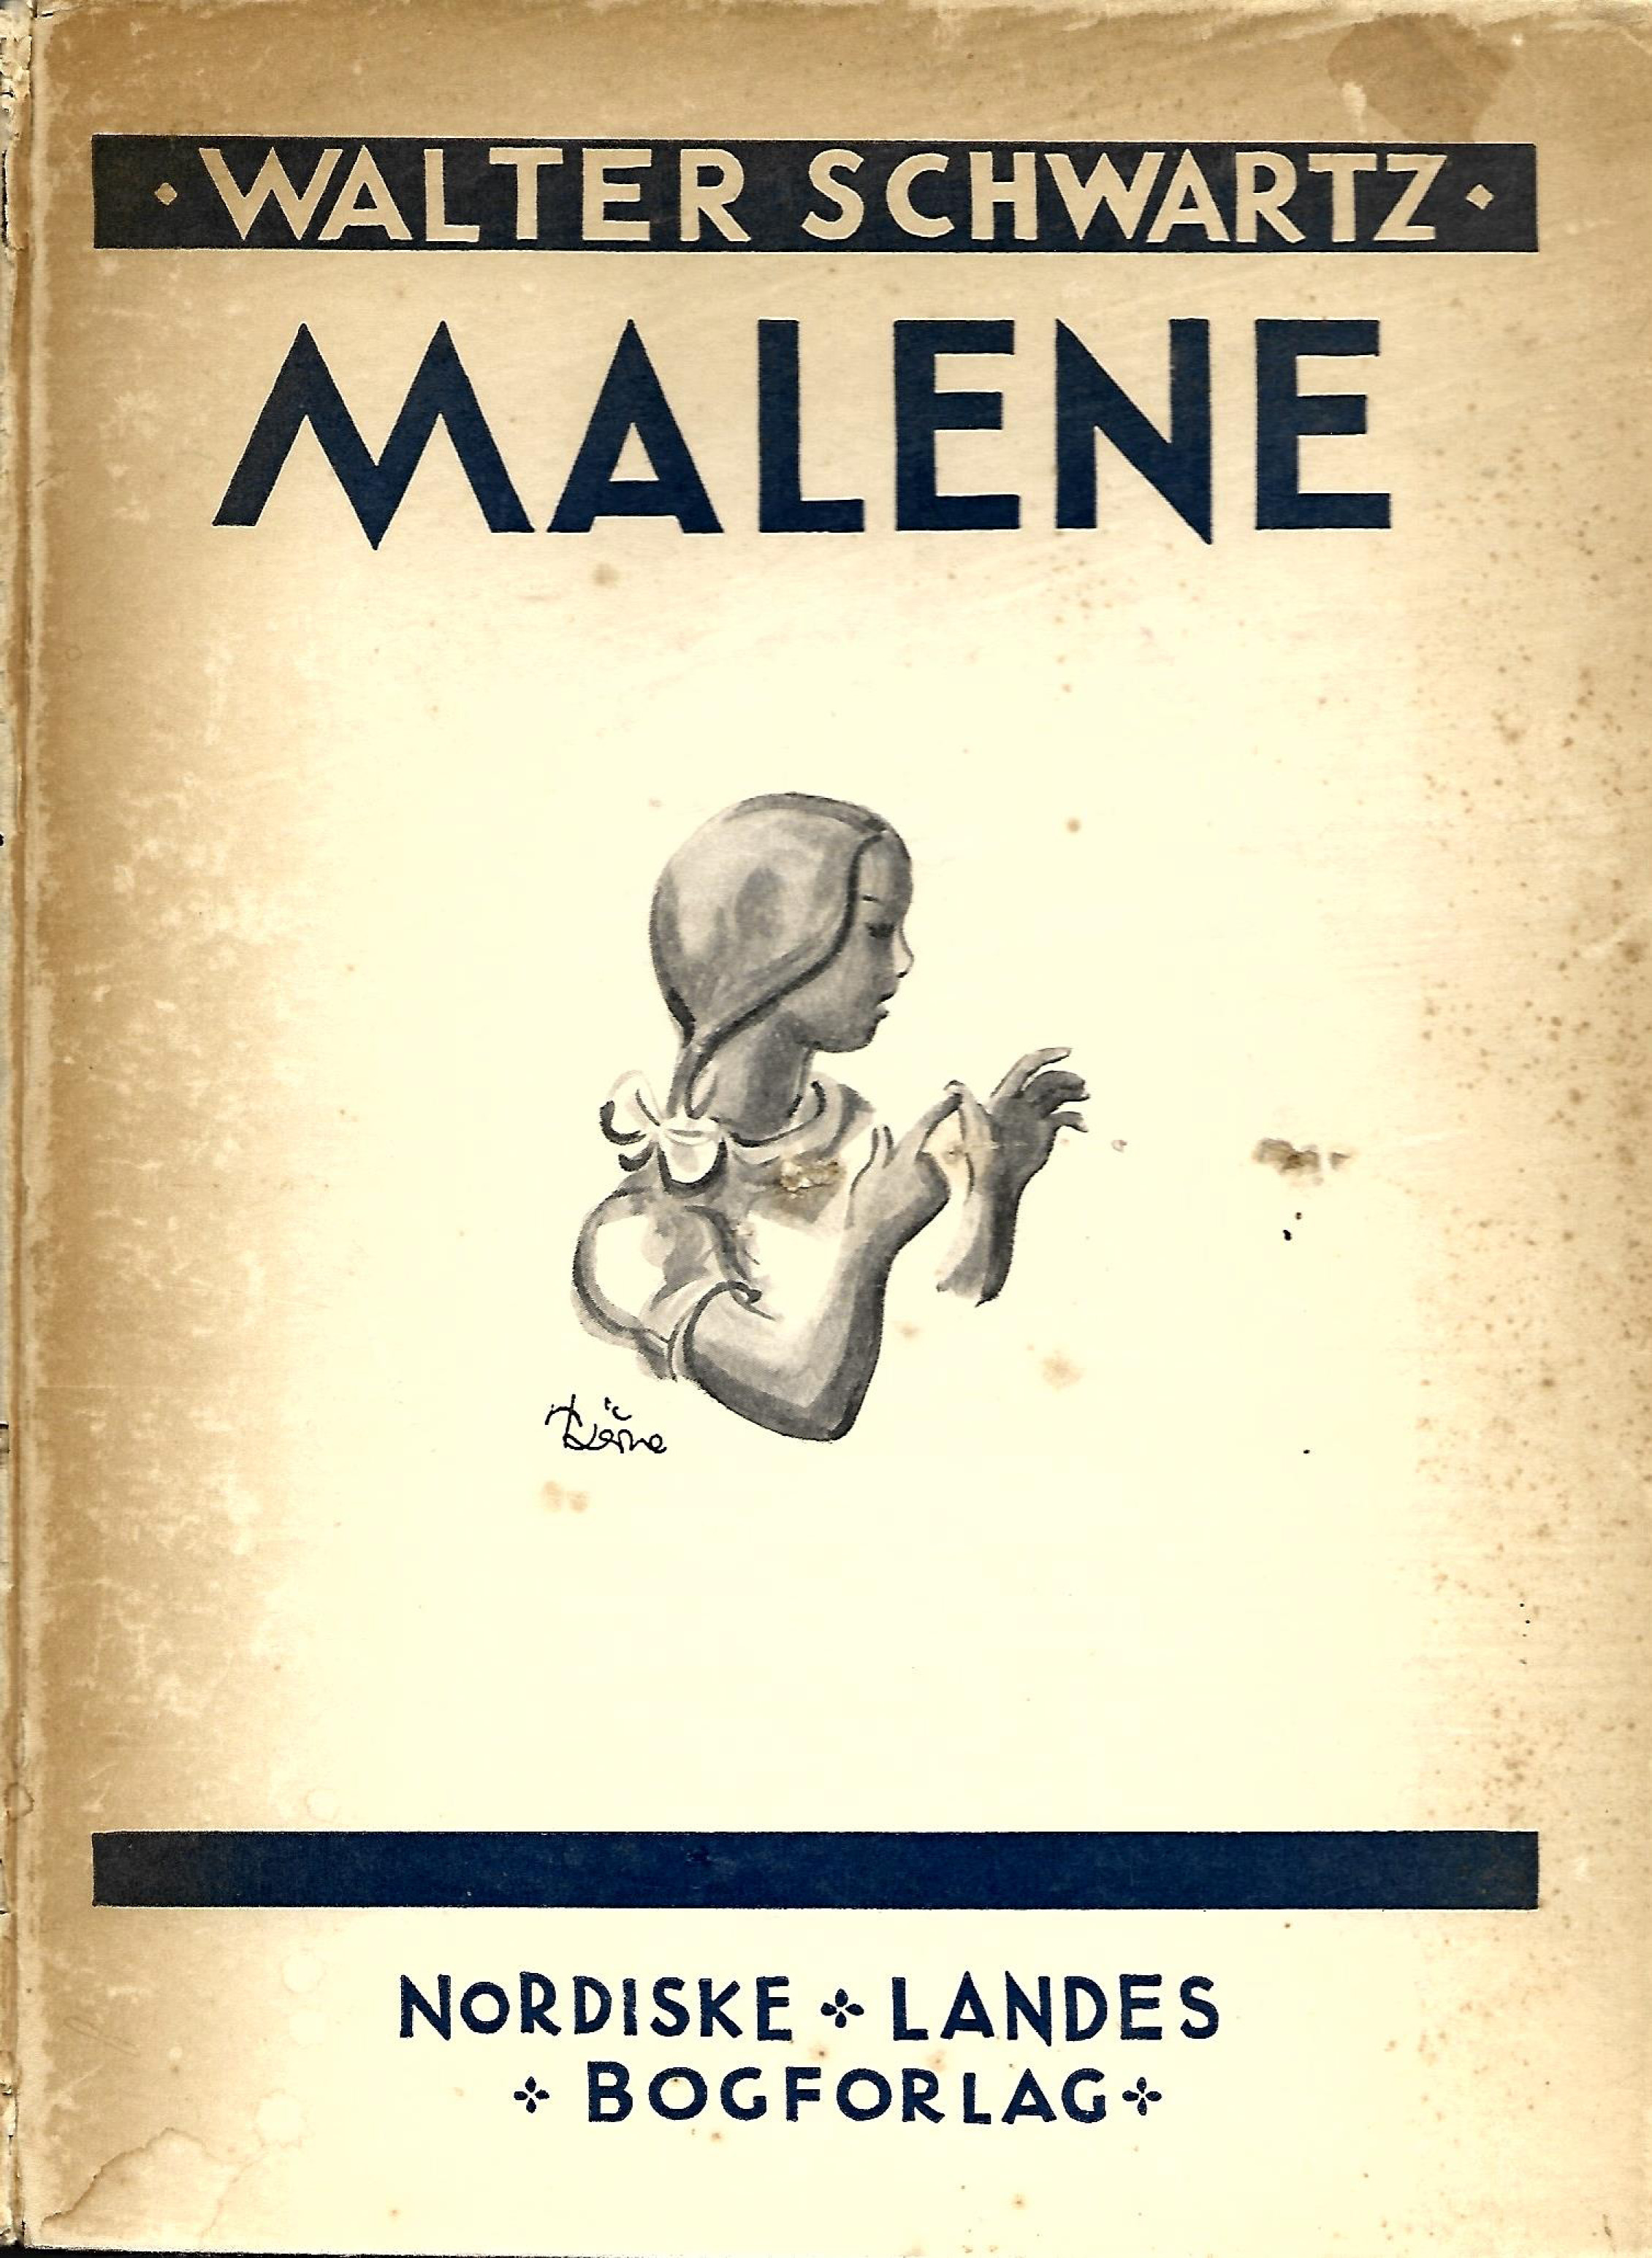 Malene - Walter Schwartz 1944-1